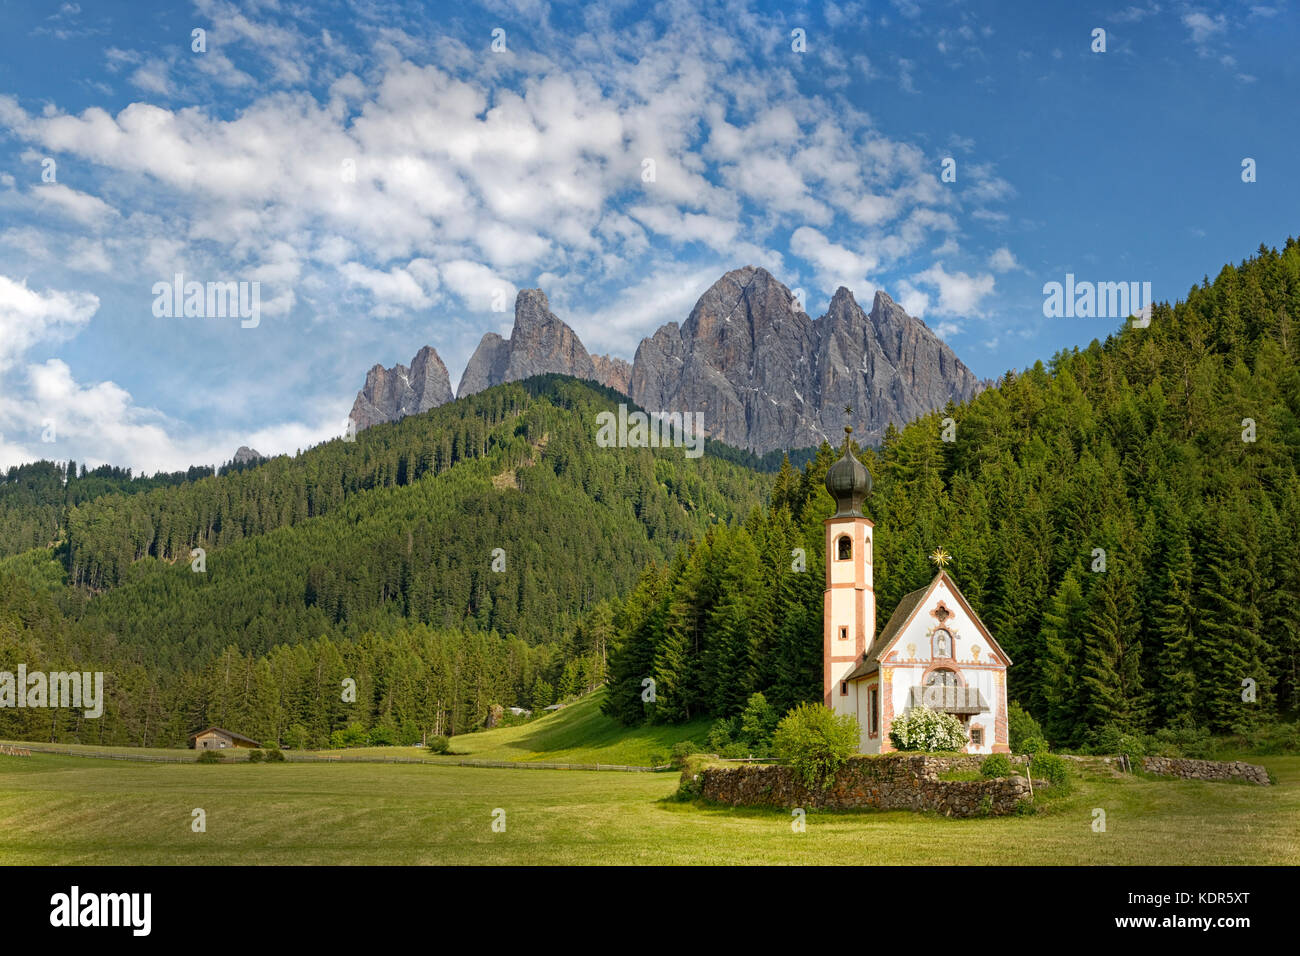 Cappella di st.johann con geisler groupe, Val di Funes, provincia di alto adige, italia, europa Foto Stock